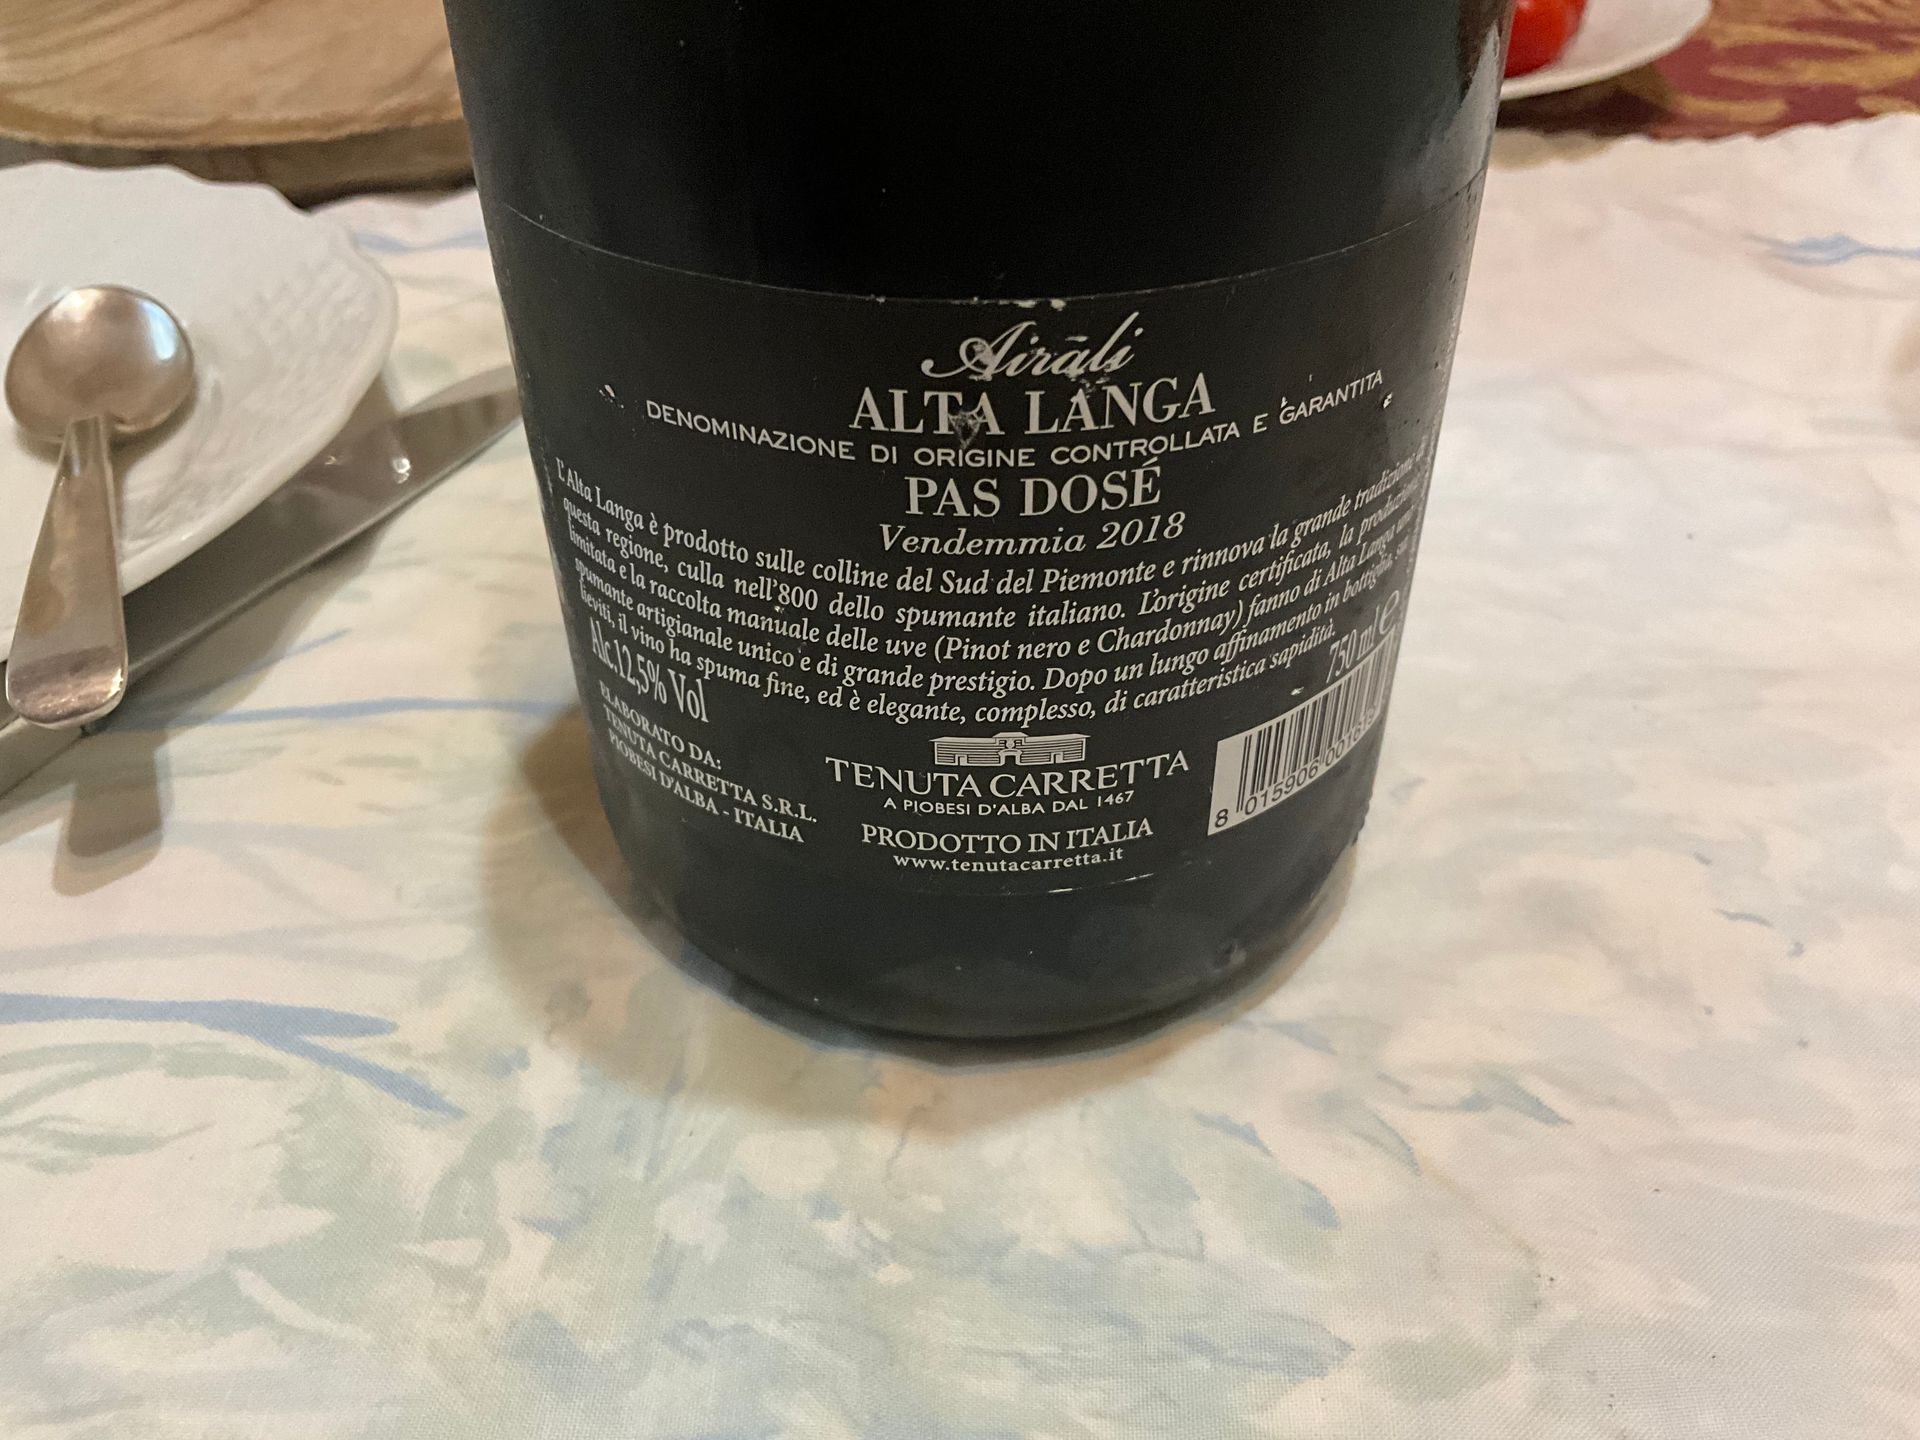 Eine Flasche Tenuta Carretta Airali Alta Langa Pas Dosé 2018
